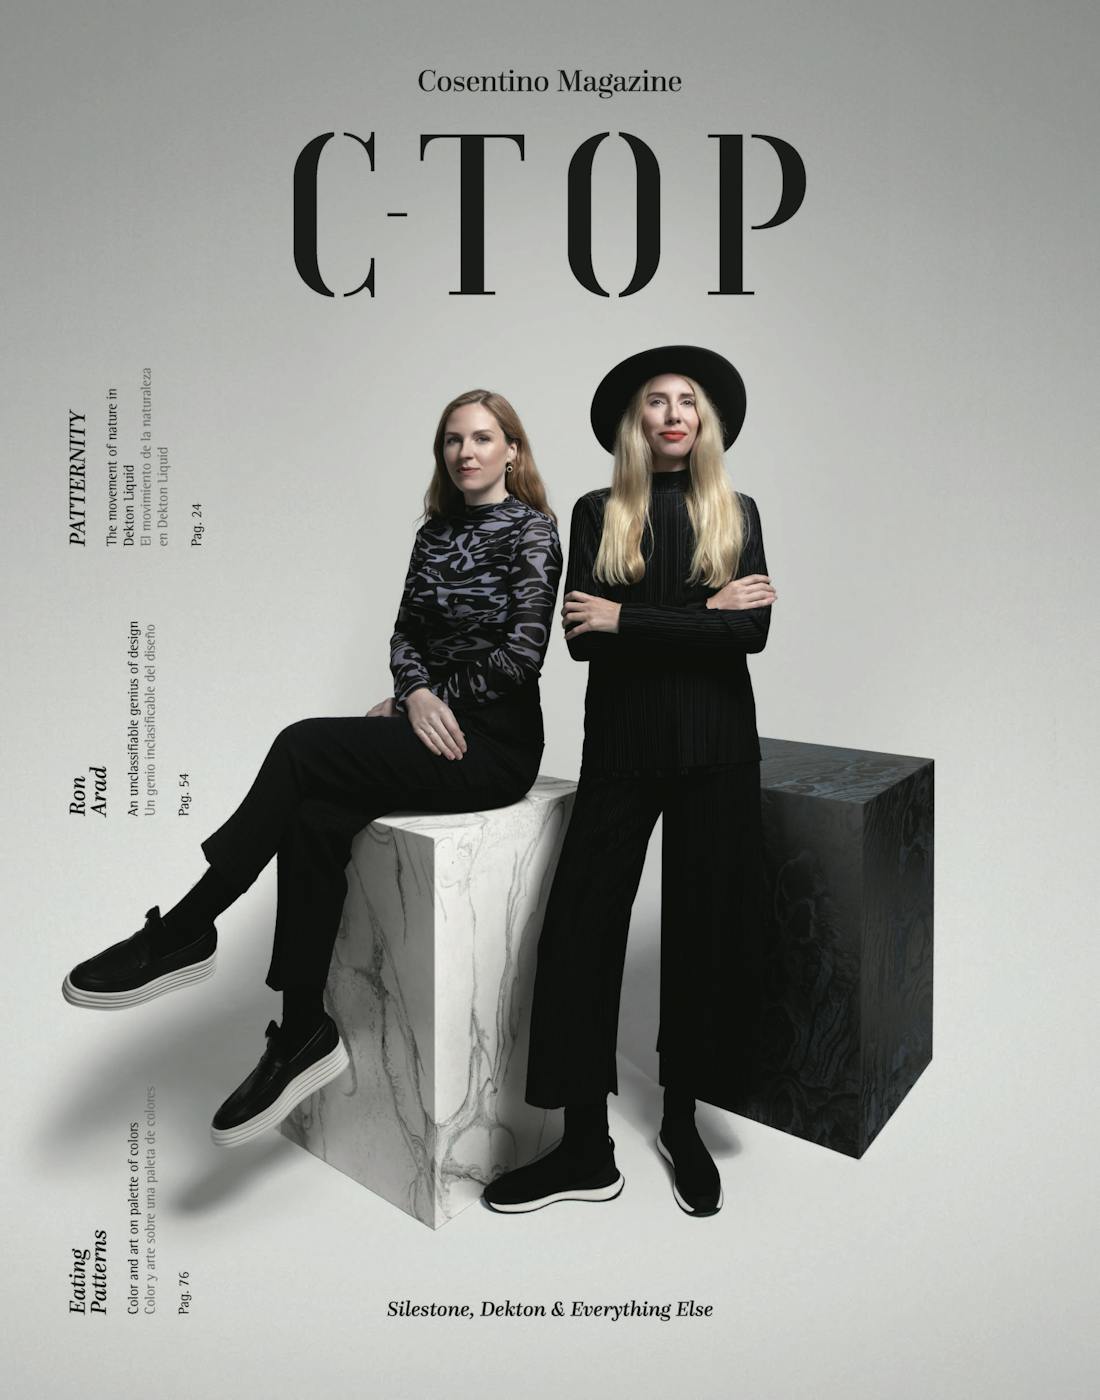 Die 4. Ausgabe des C-Top Magazins ist da – jetzt noch inspirierender als je zuvor!